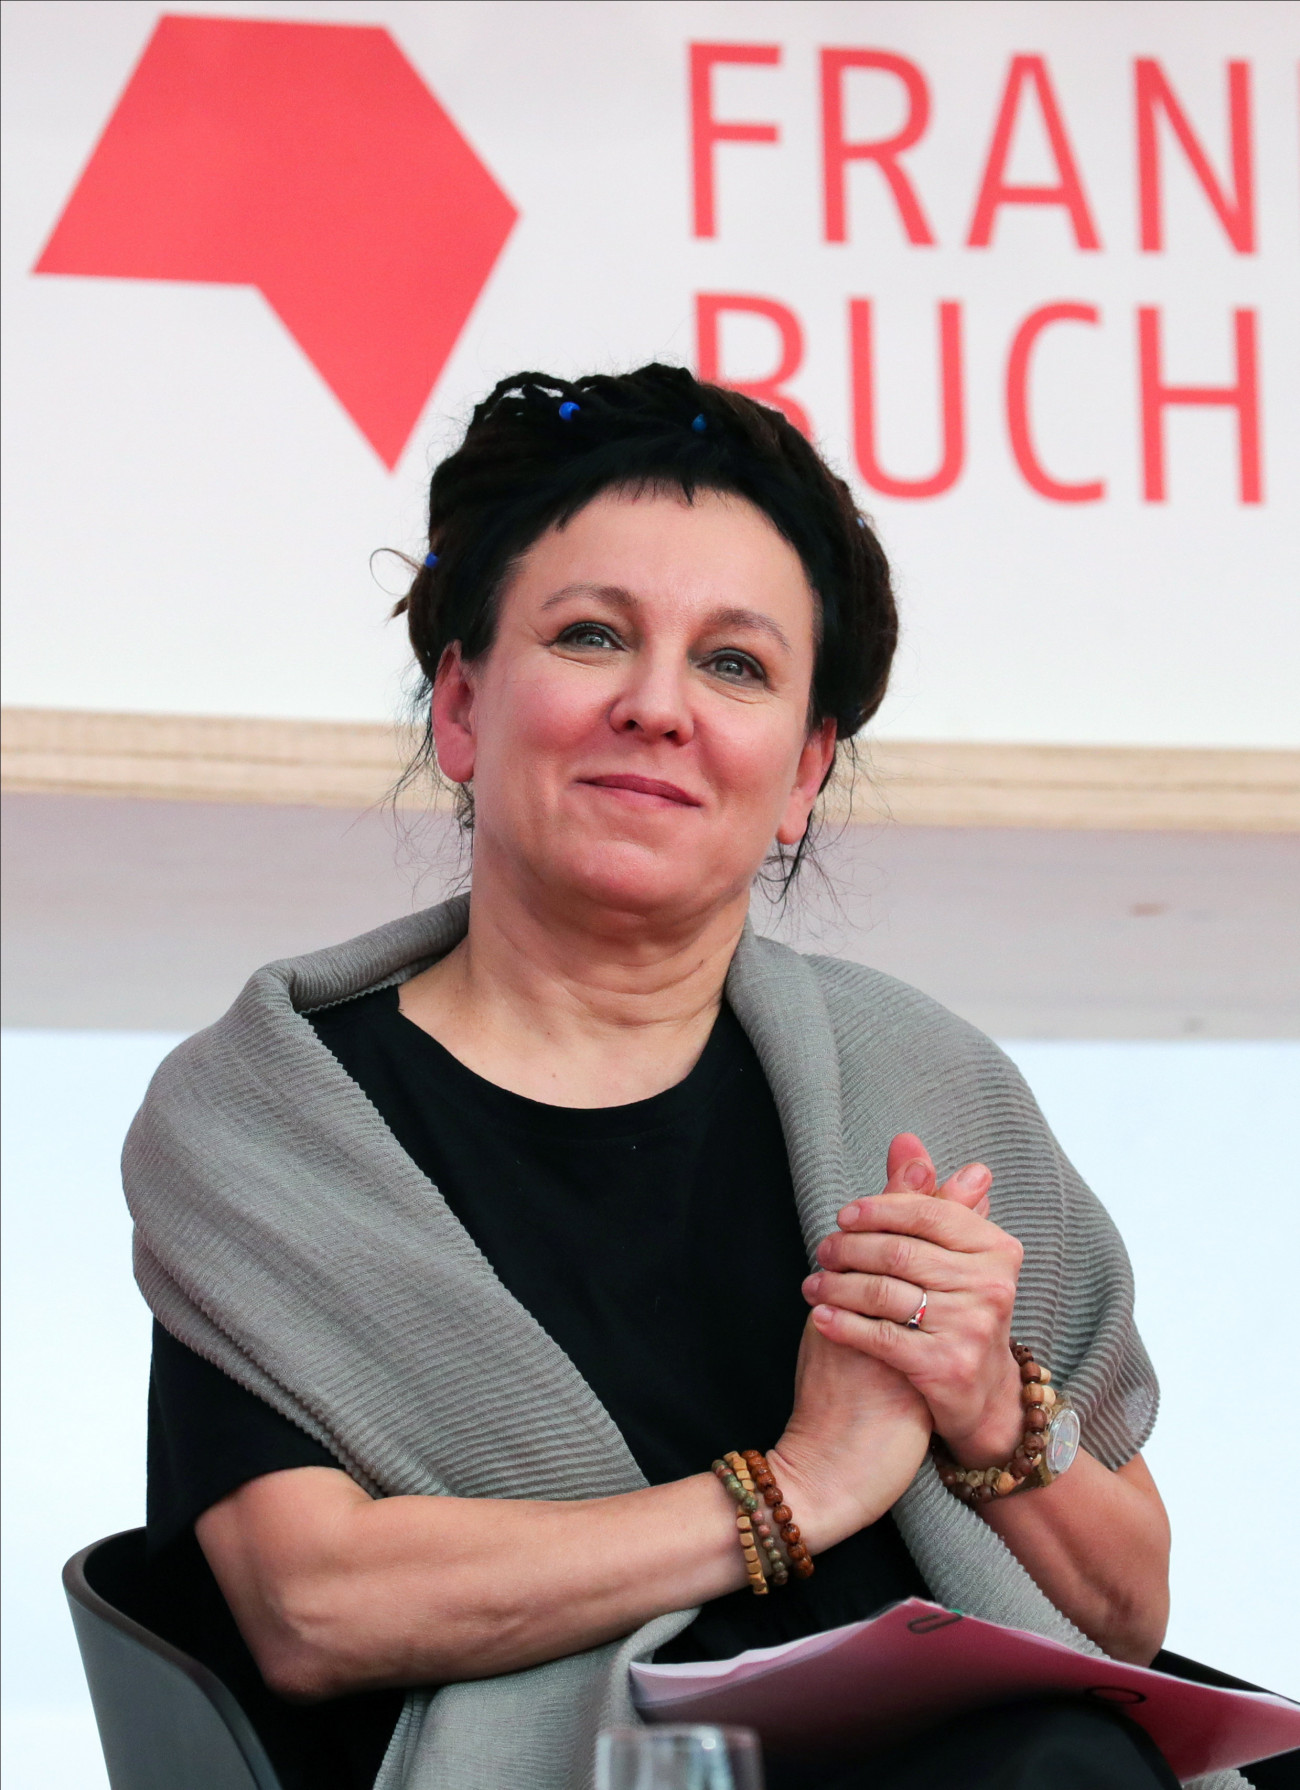 A 2018-as irodalmi Nobel-díjat elnyert Olga Tokarczuk lengyel írónő a 71. Frankfurti Könyvvásár nyitó sajtótájékoztatóján 2019. október 15-én.  Az október 20-ig tartó könyvvásárnak az idén Norvégia a díszvendége.
MTI/EPA/Armando Babani